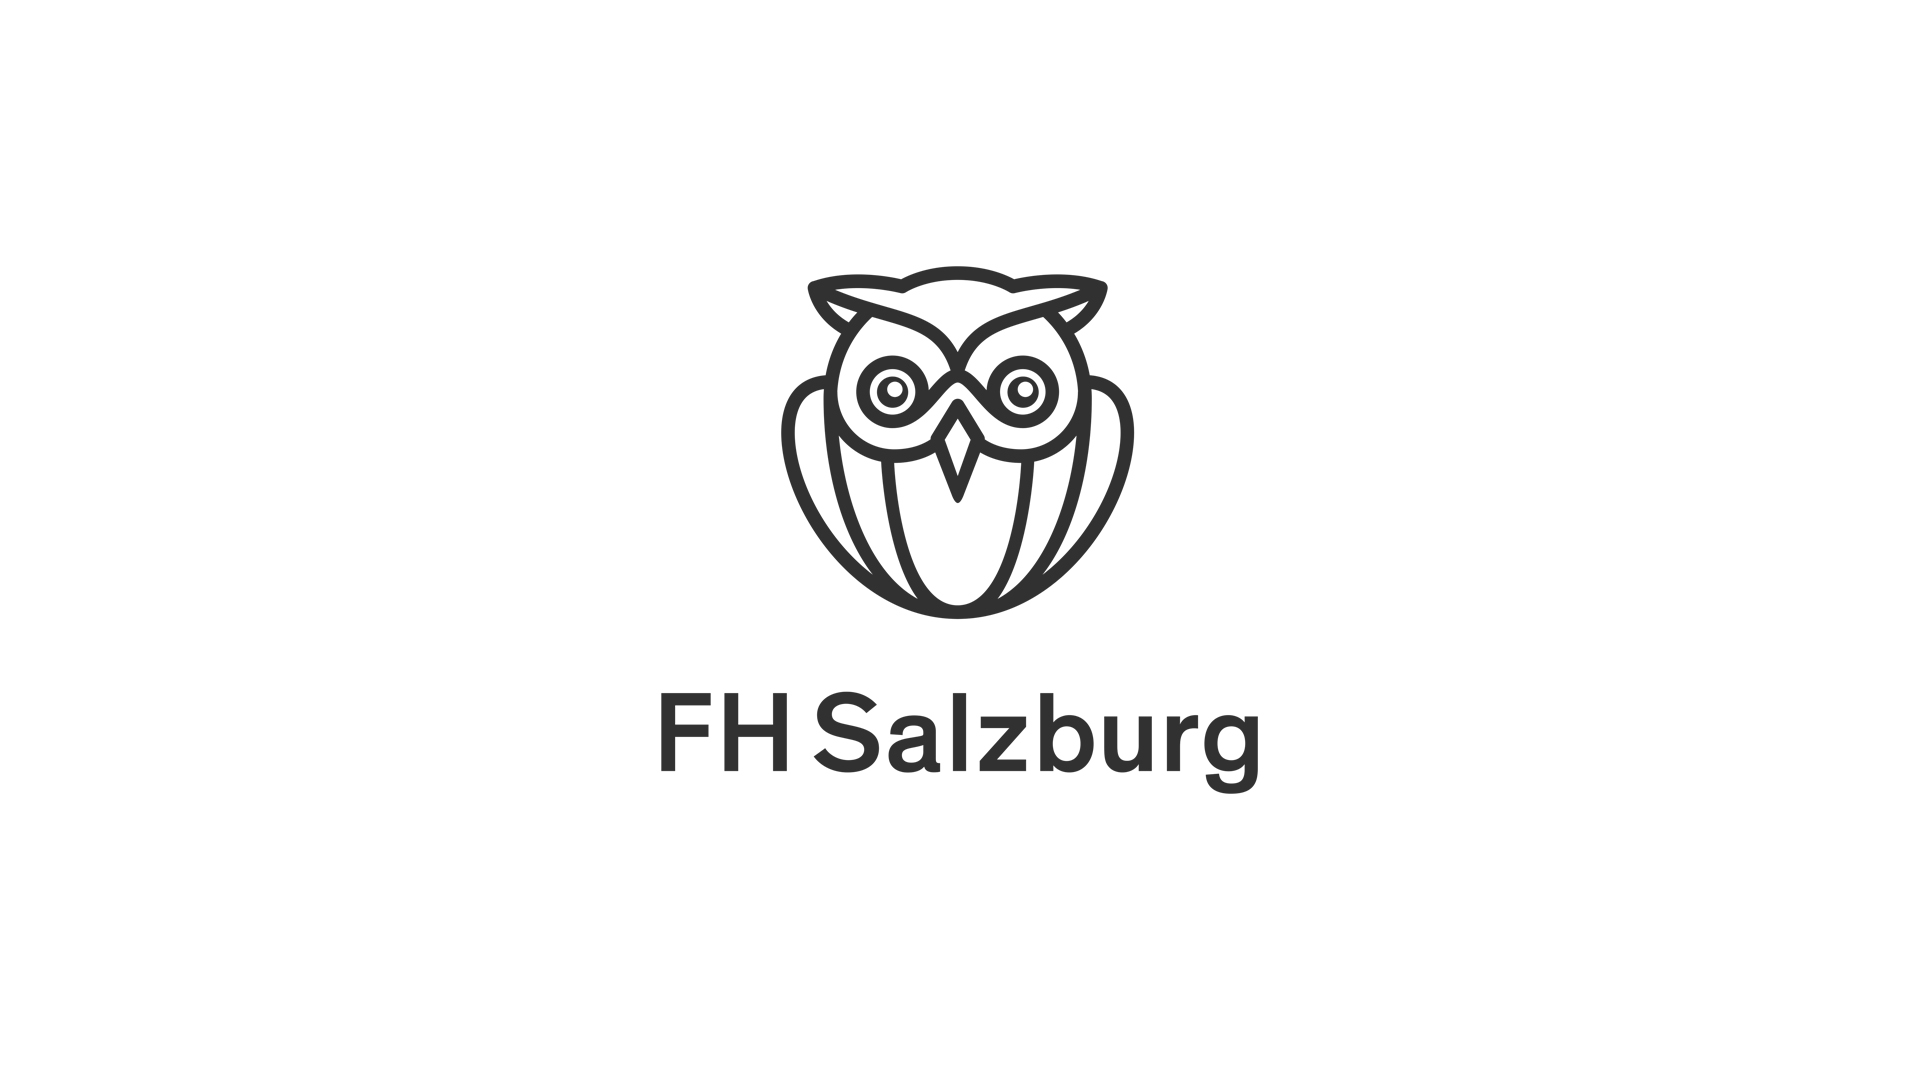 Hier sieht man das Logo der FH Salzburg.